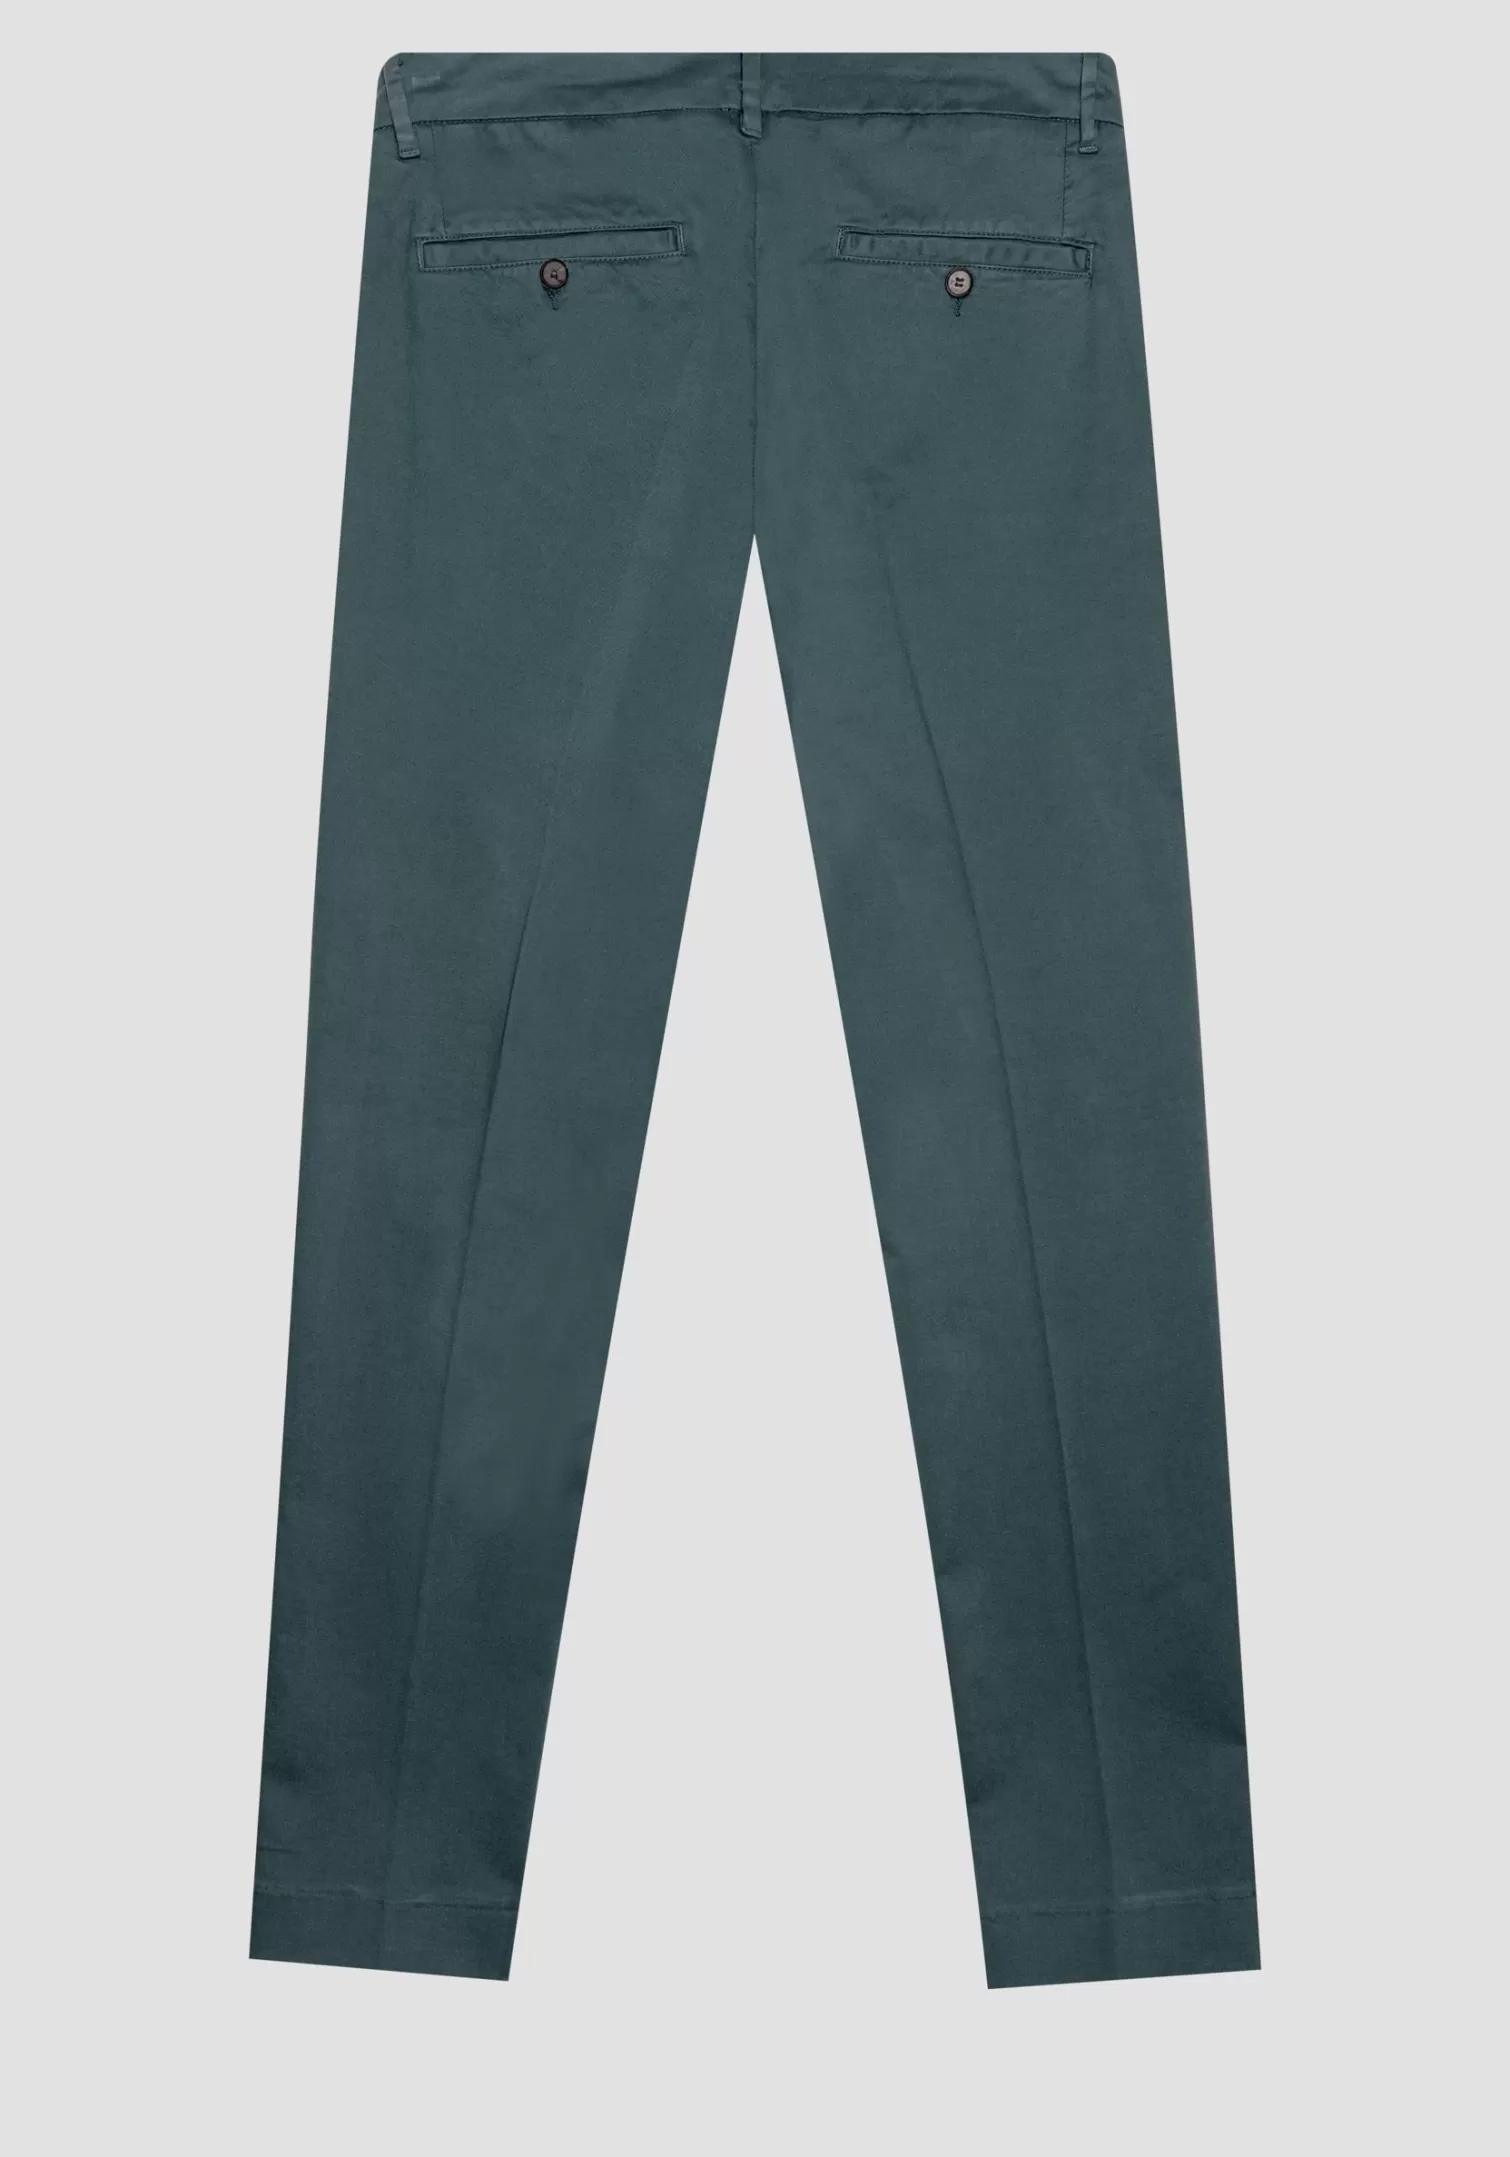 Pantaloni>Antony Morato Pantaloni Bryan Skinny Fit In Cotone Elastico Micro Armaturato Verde Bottiglia